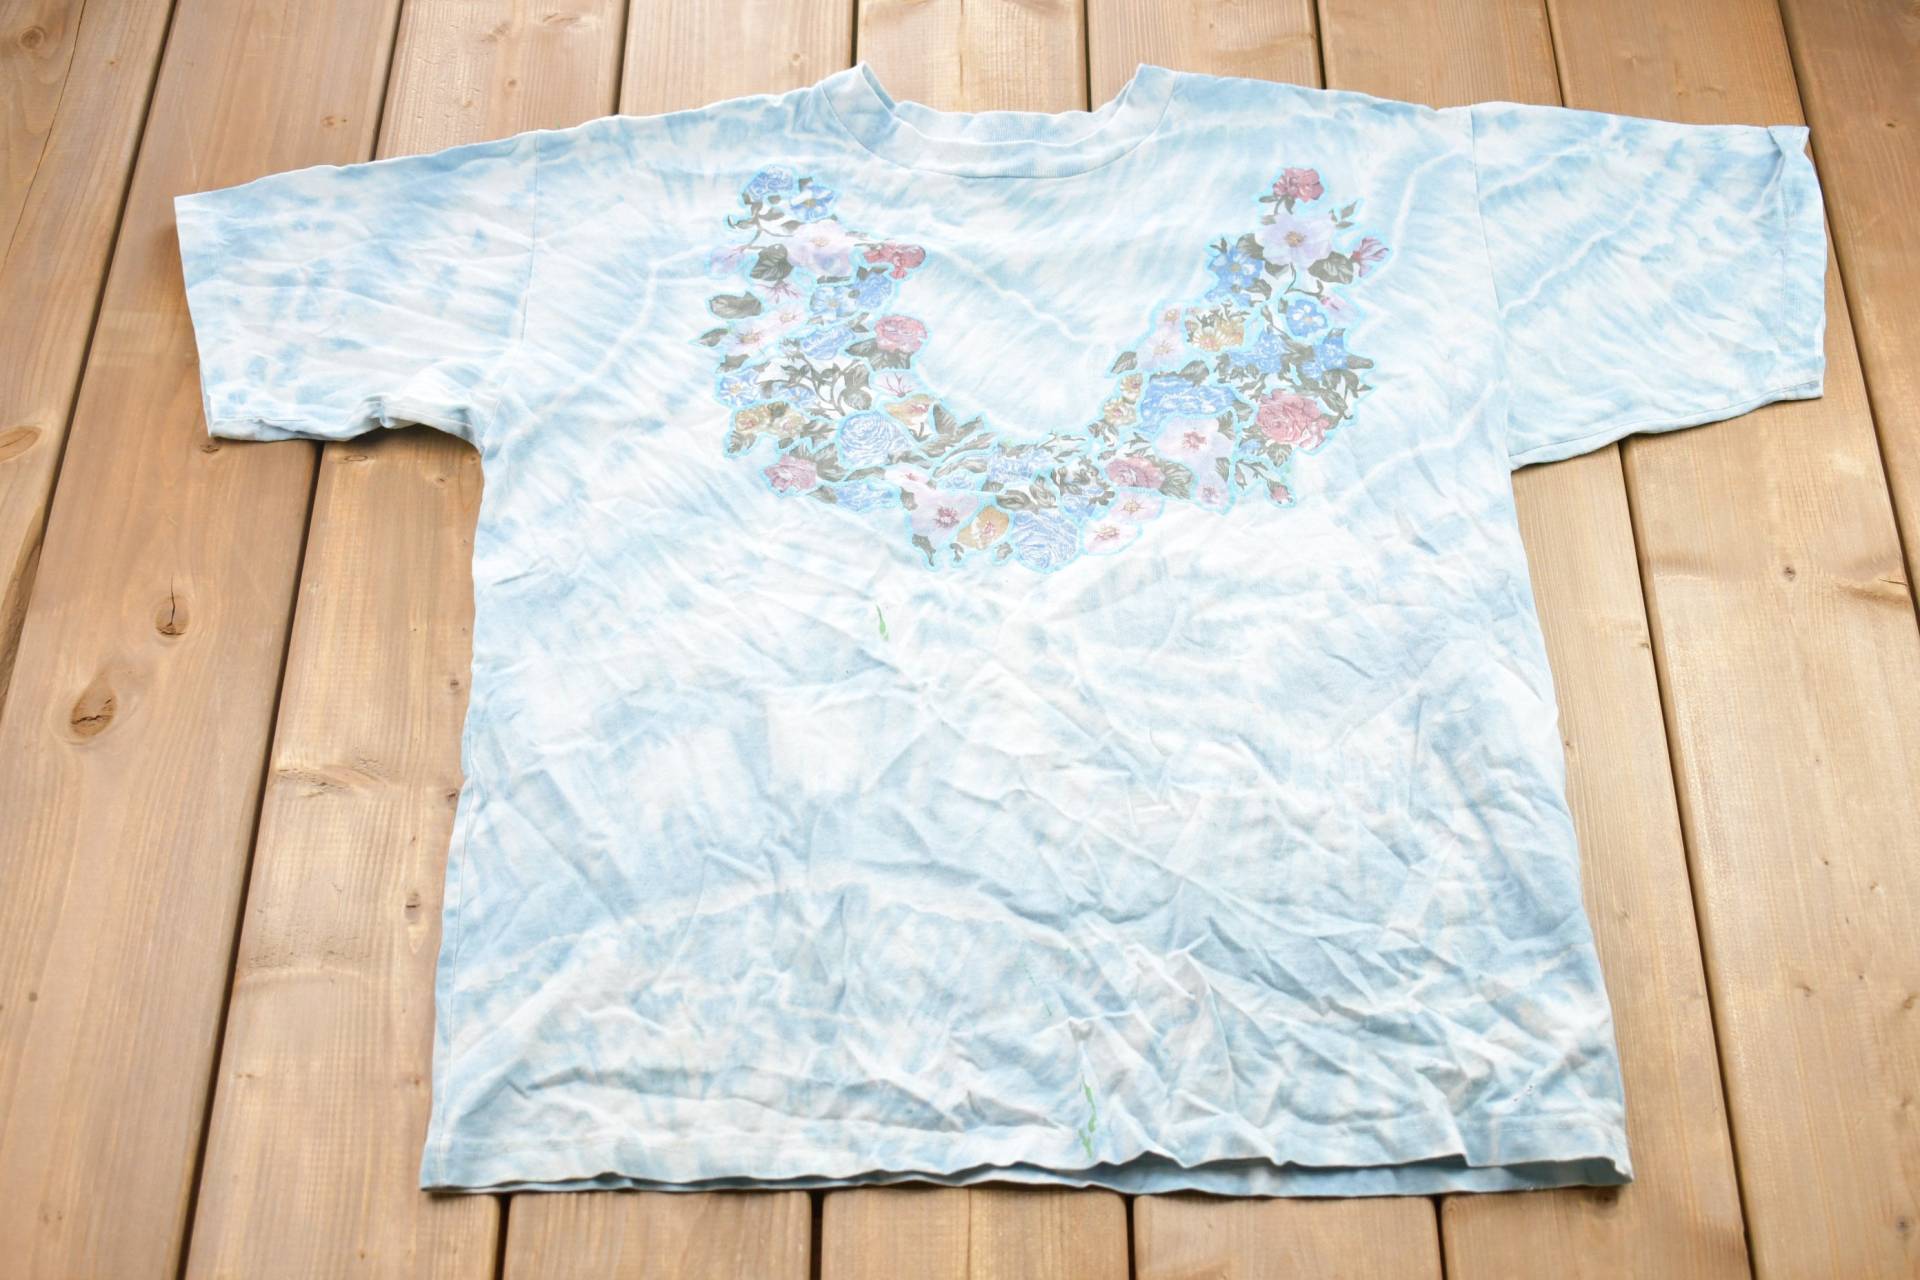 Vintage 1990S Newport Tie-Dye Wreath Graphic T-Shirt/80Er 90Er Jahre Streetwear Retro Style Florales Bild Kranz-T-Shirt von Lostboysvintage